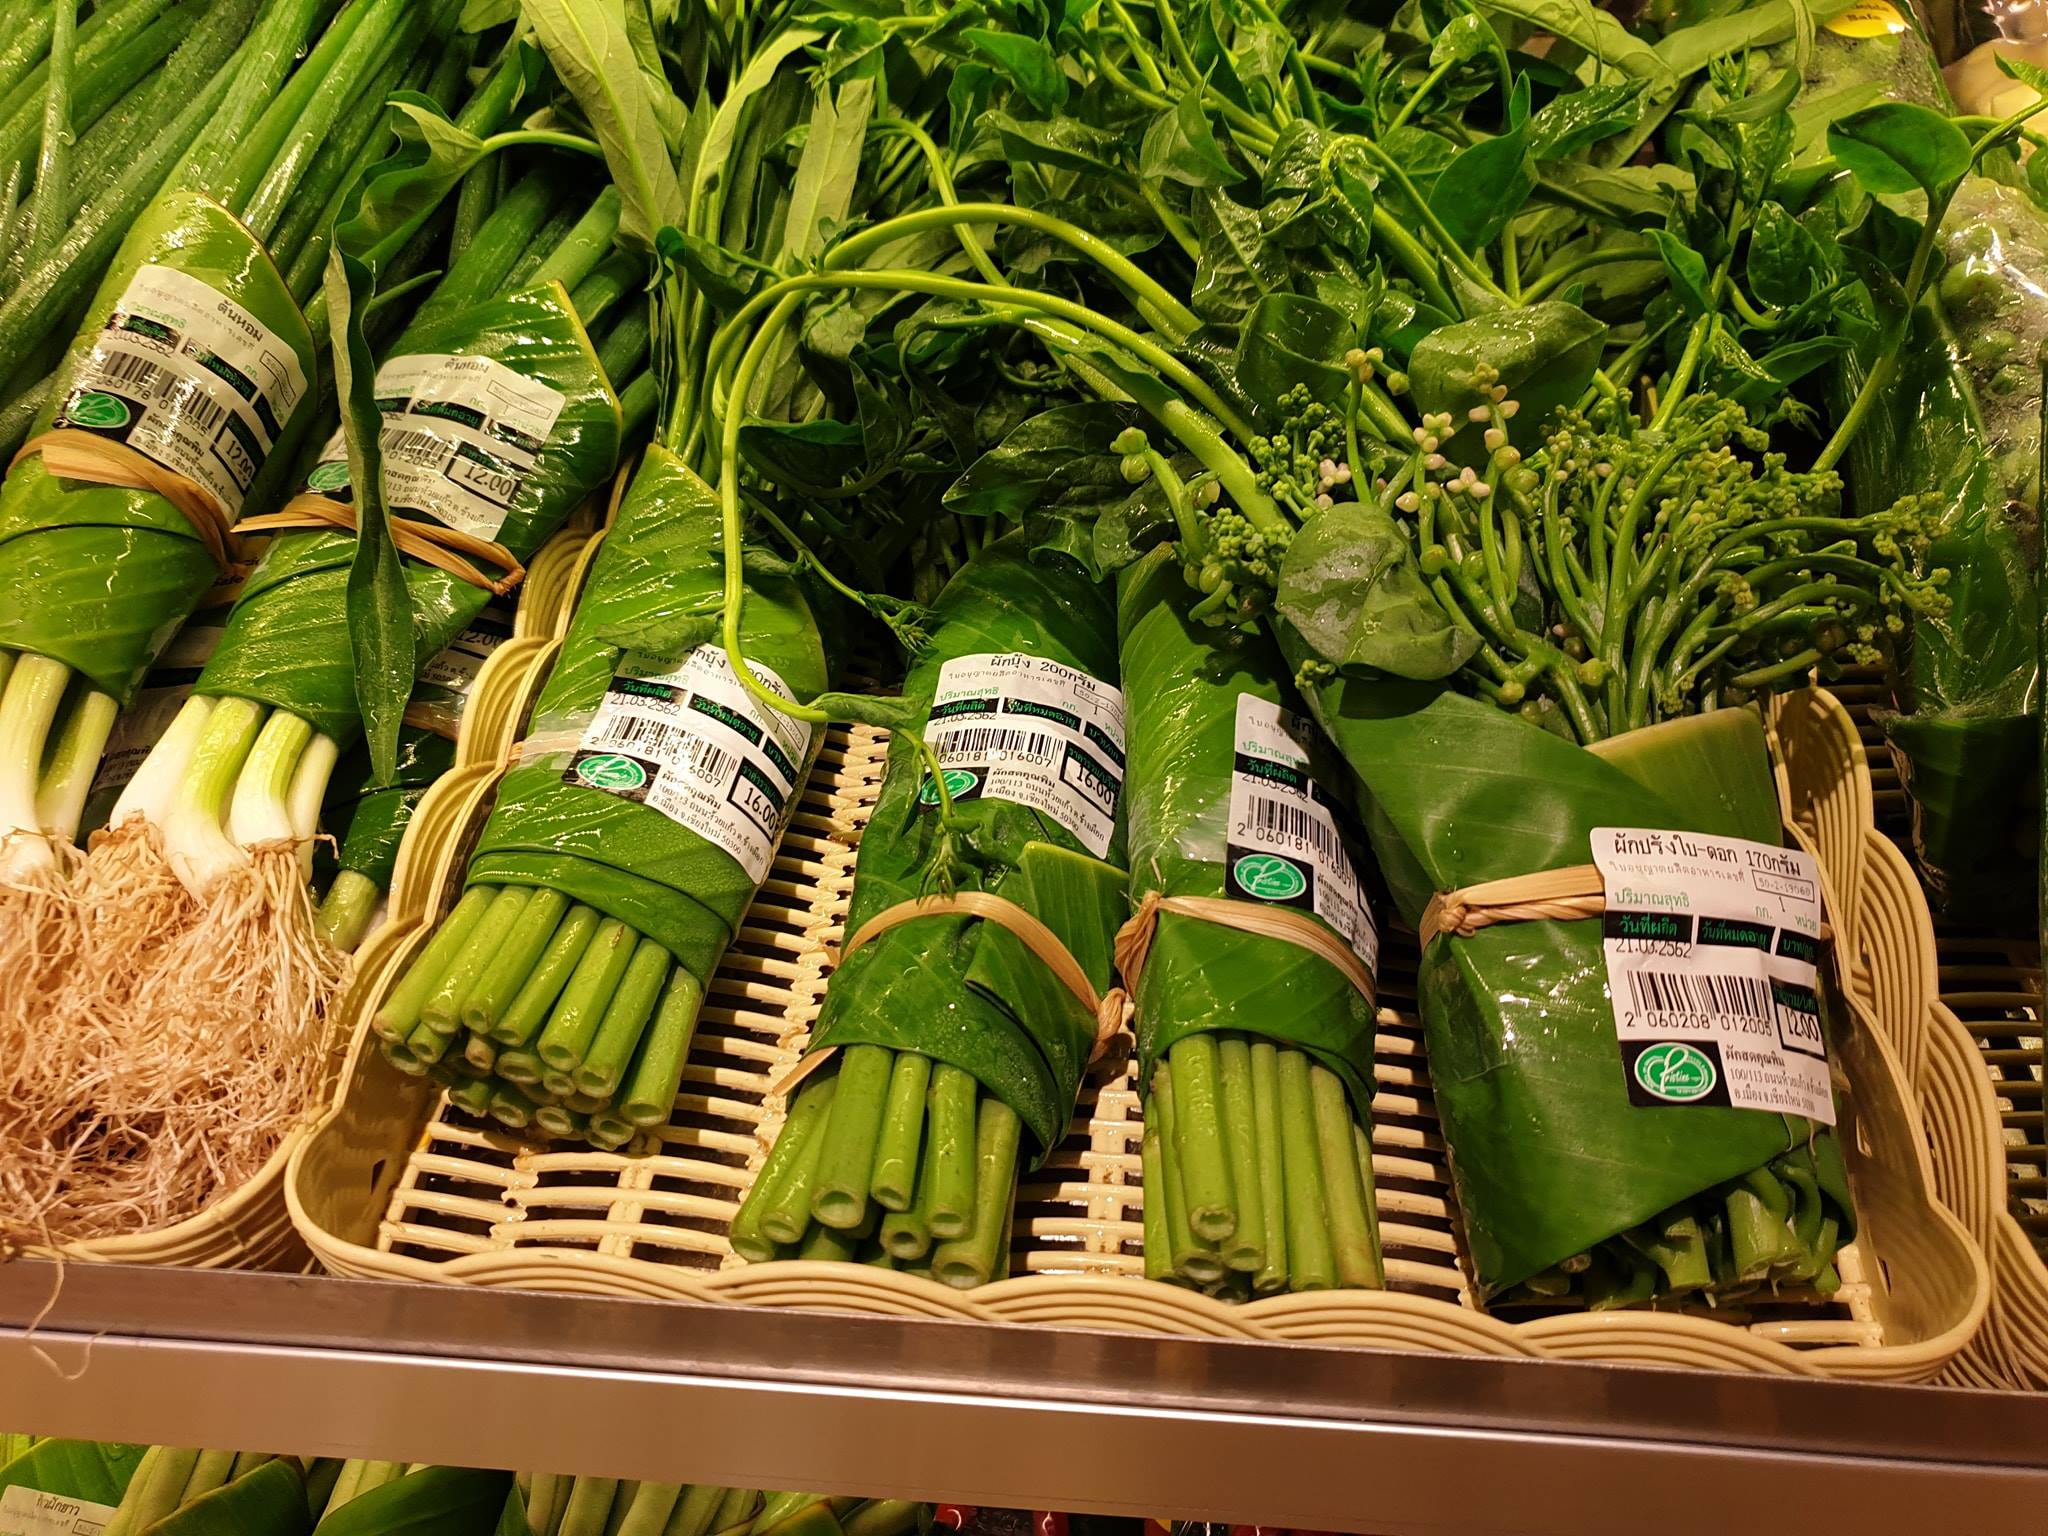 ¡Una gran idea! Este supermercado cambió los empaques de plástico por hojas de plátano